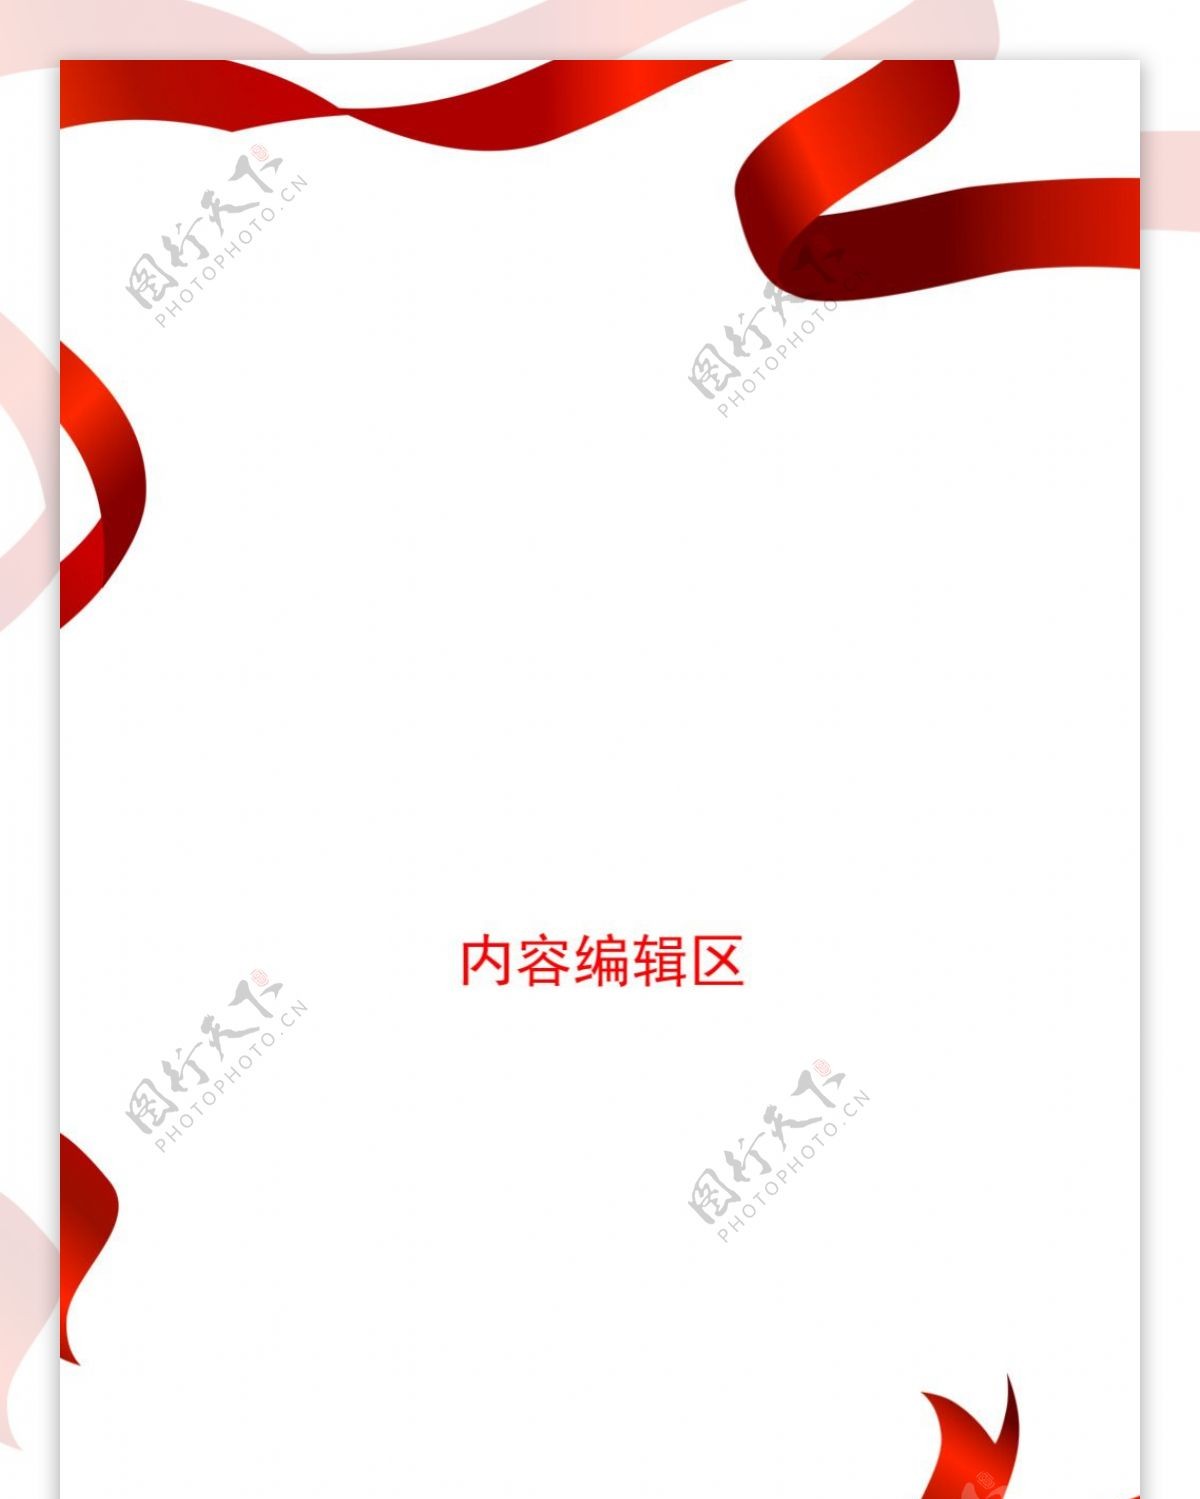 精美中国结展架模板设计素材画面设计